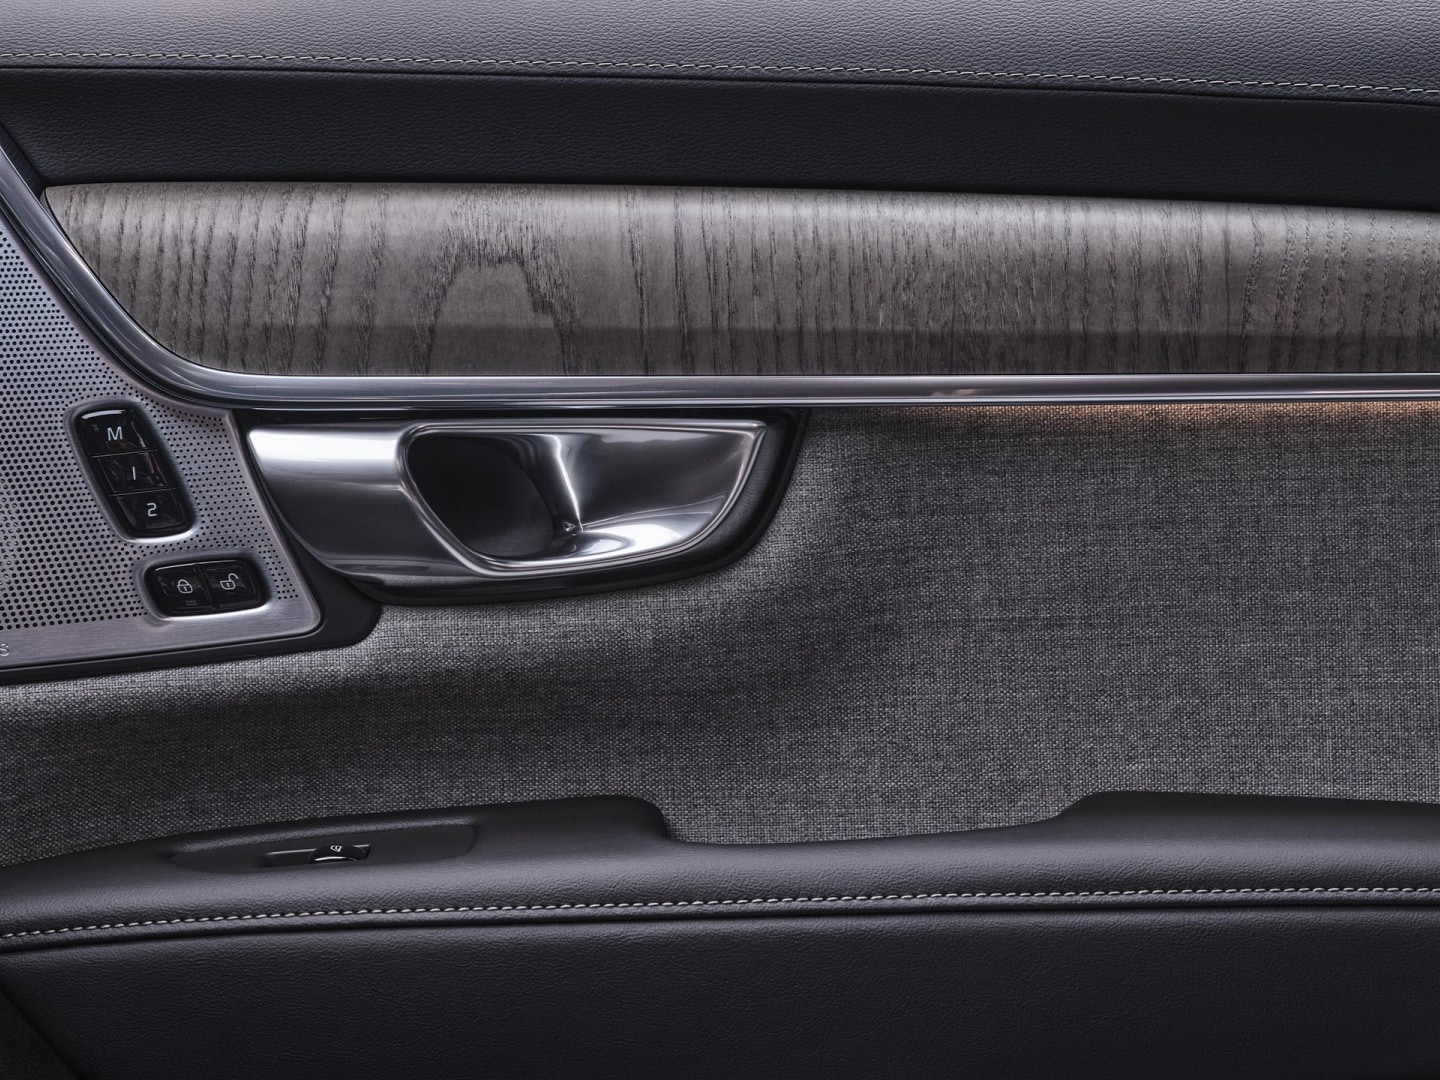 Innenansicht der Beifahrertür des Volvo V90 Plug-in Hybrid.